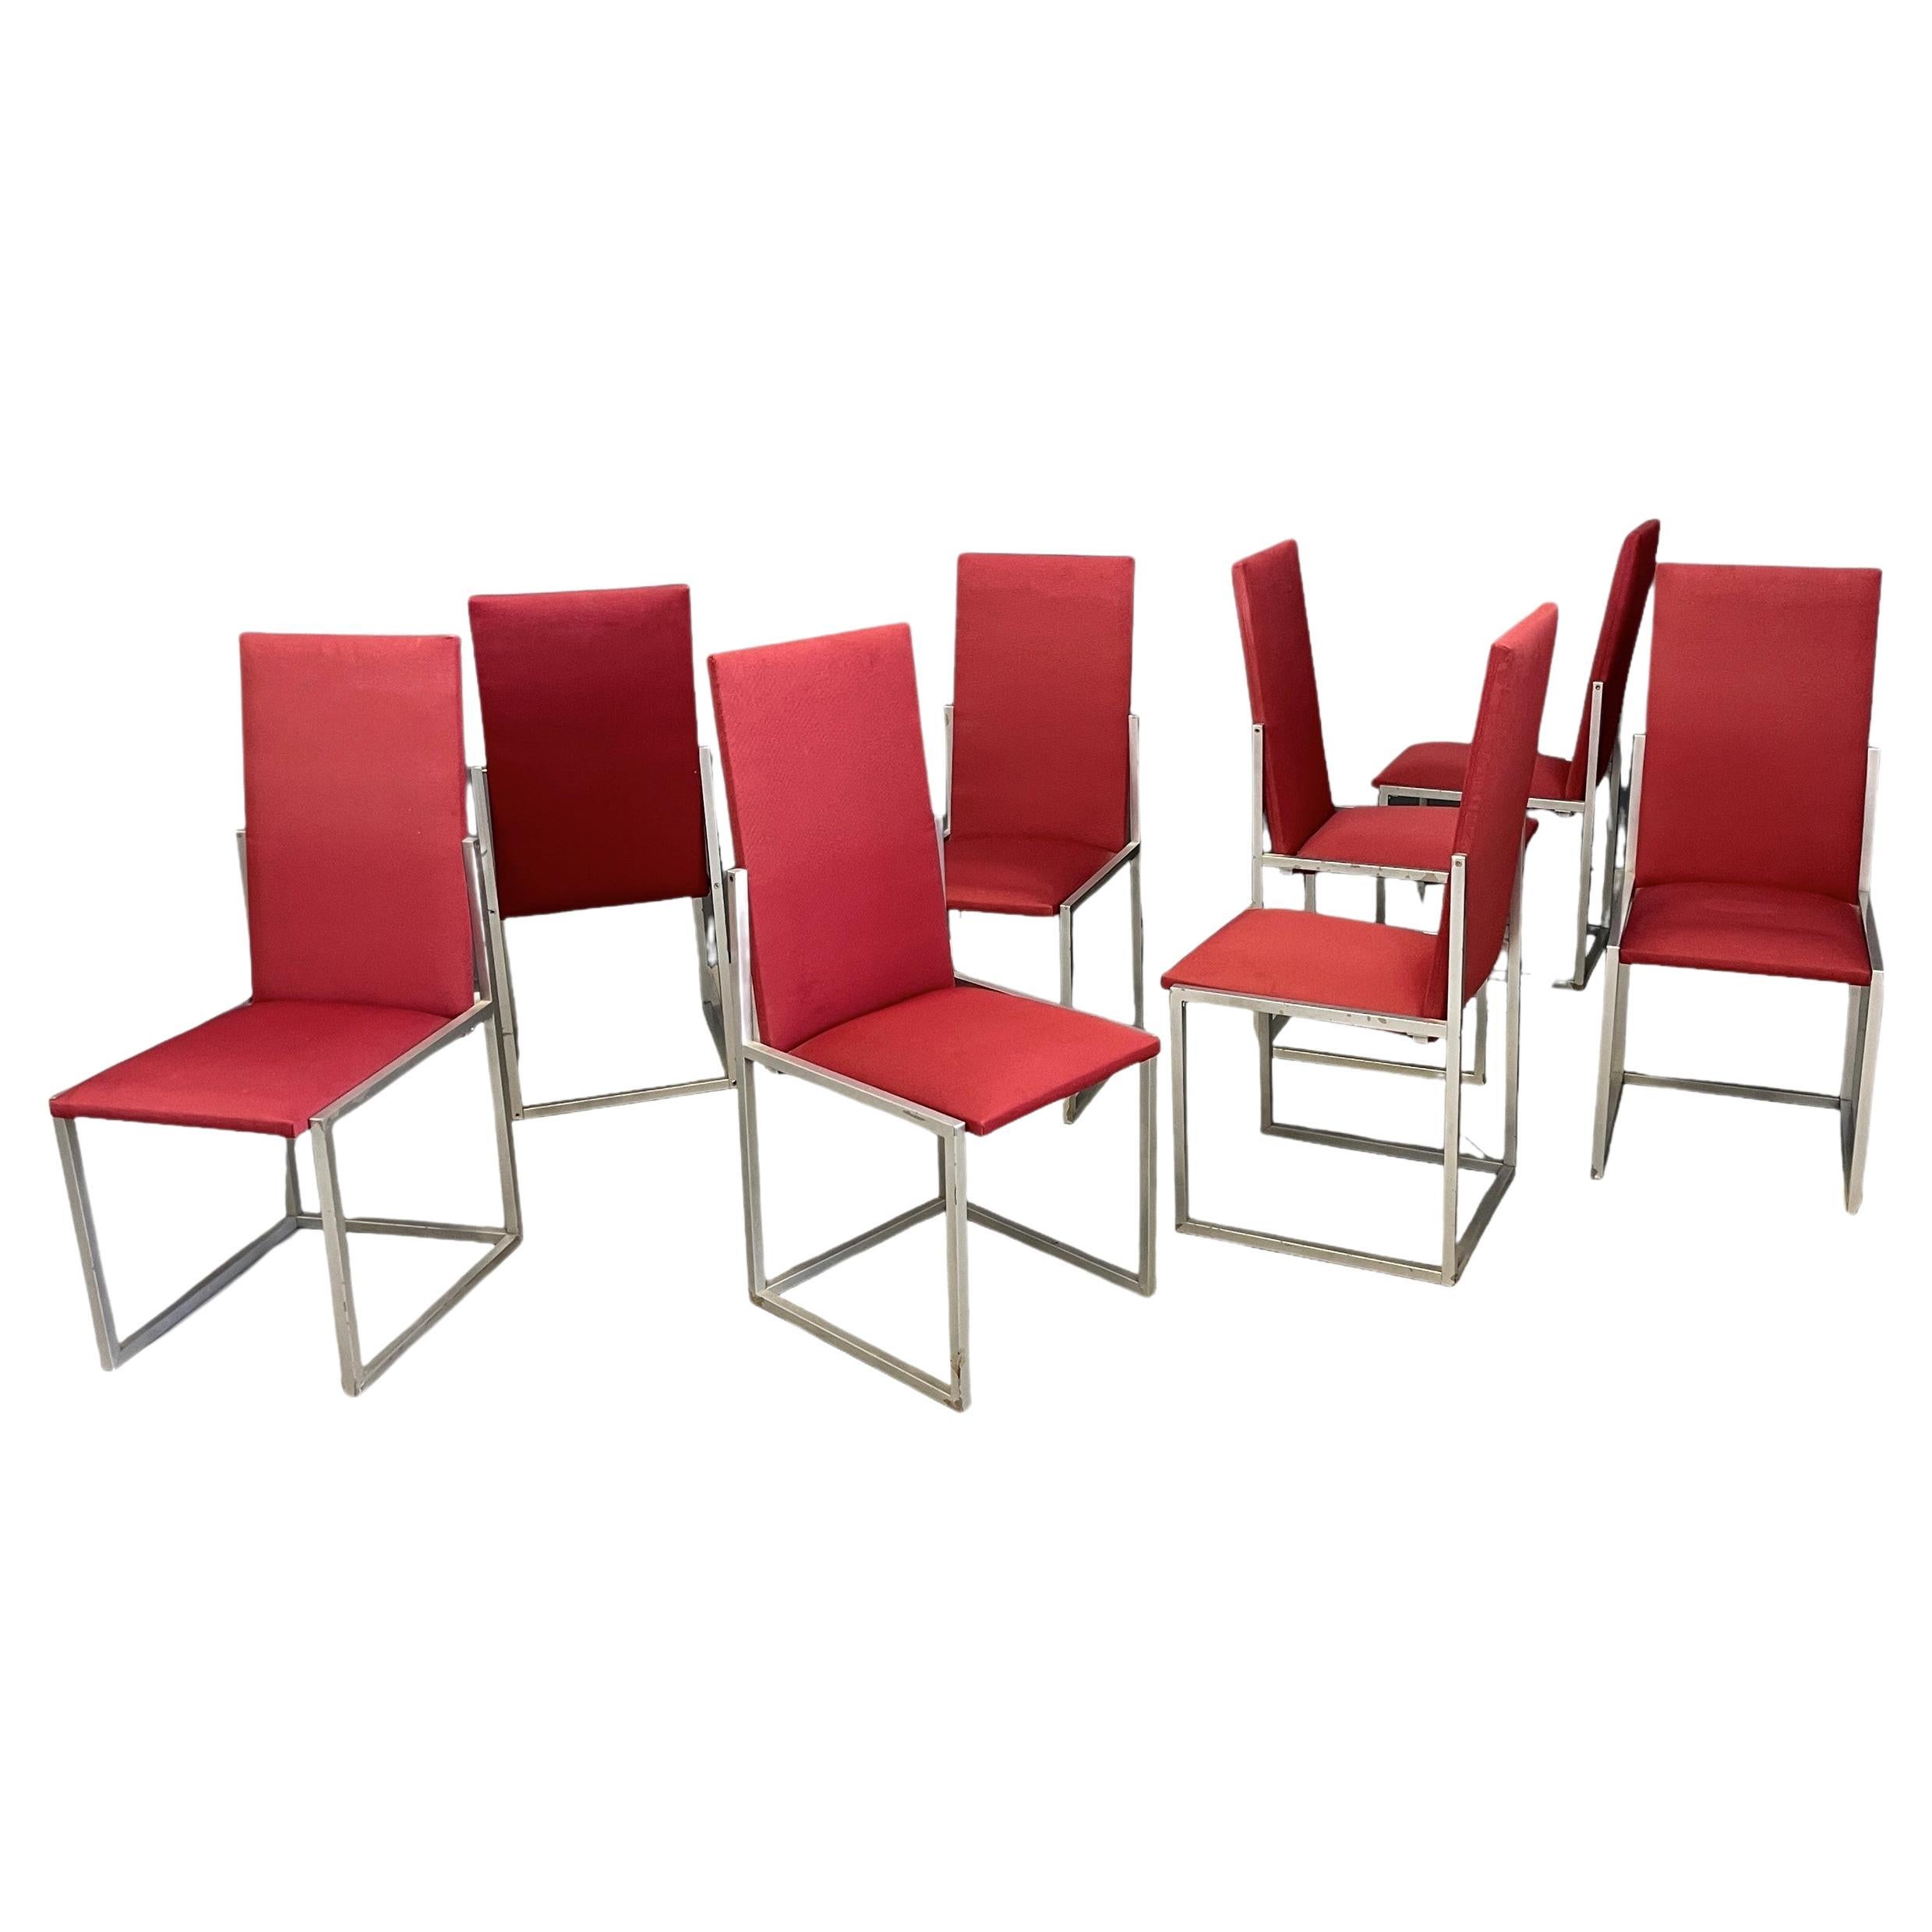 Acht italienische Stühle, Produktion Turri, 1970er Jahre